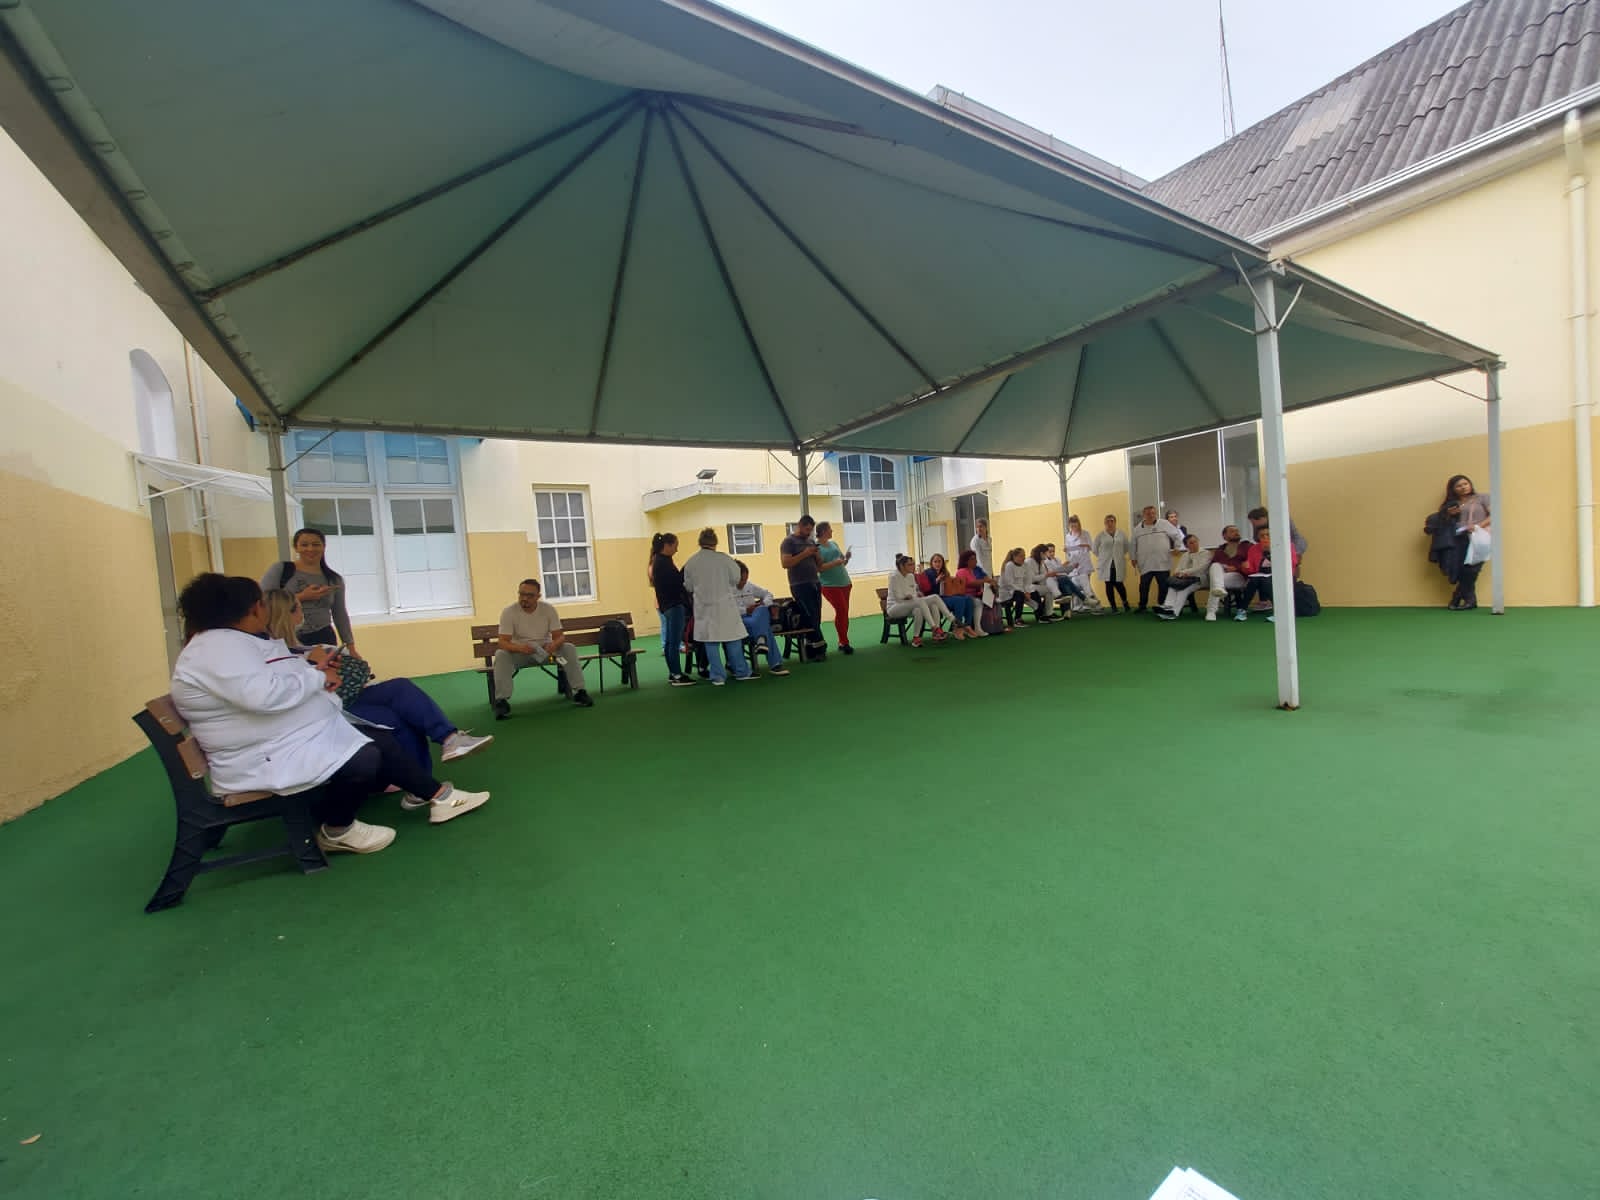 Crise na Santa Casa de Misericórdia de Ponta Grossa: Profissionais de enfermagem protestam por salários reduzidos